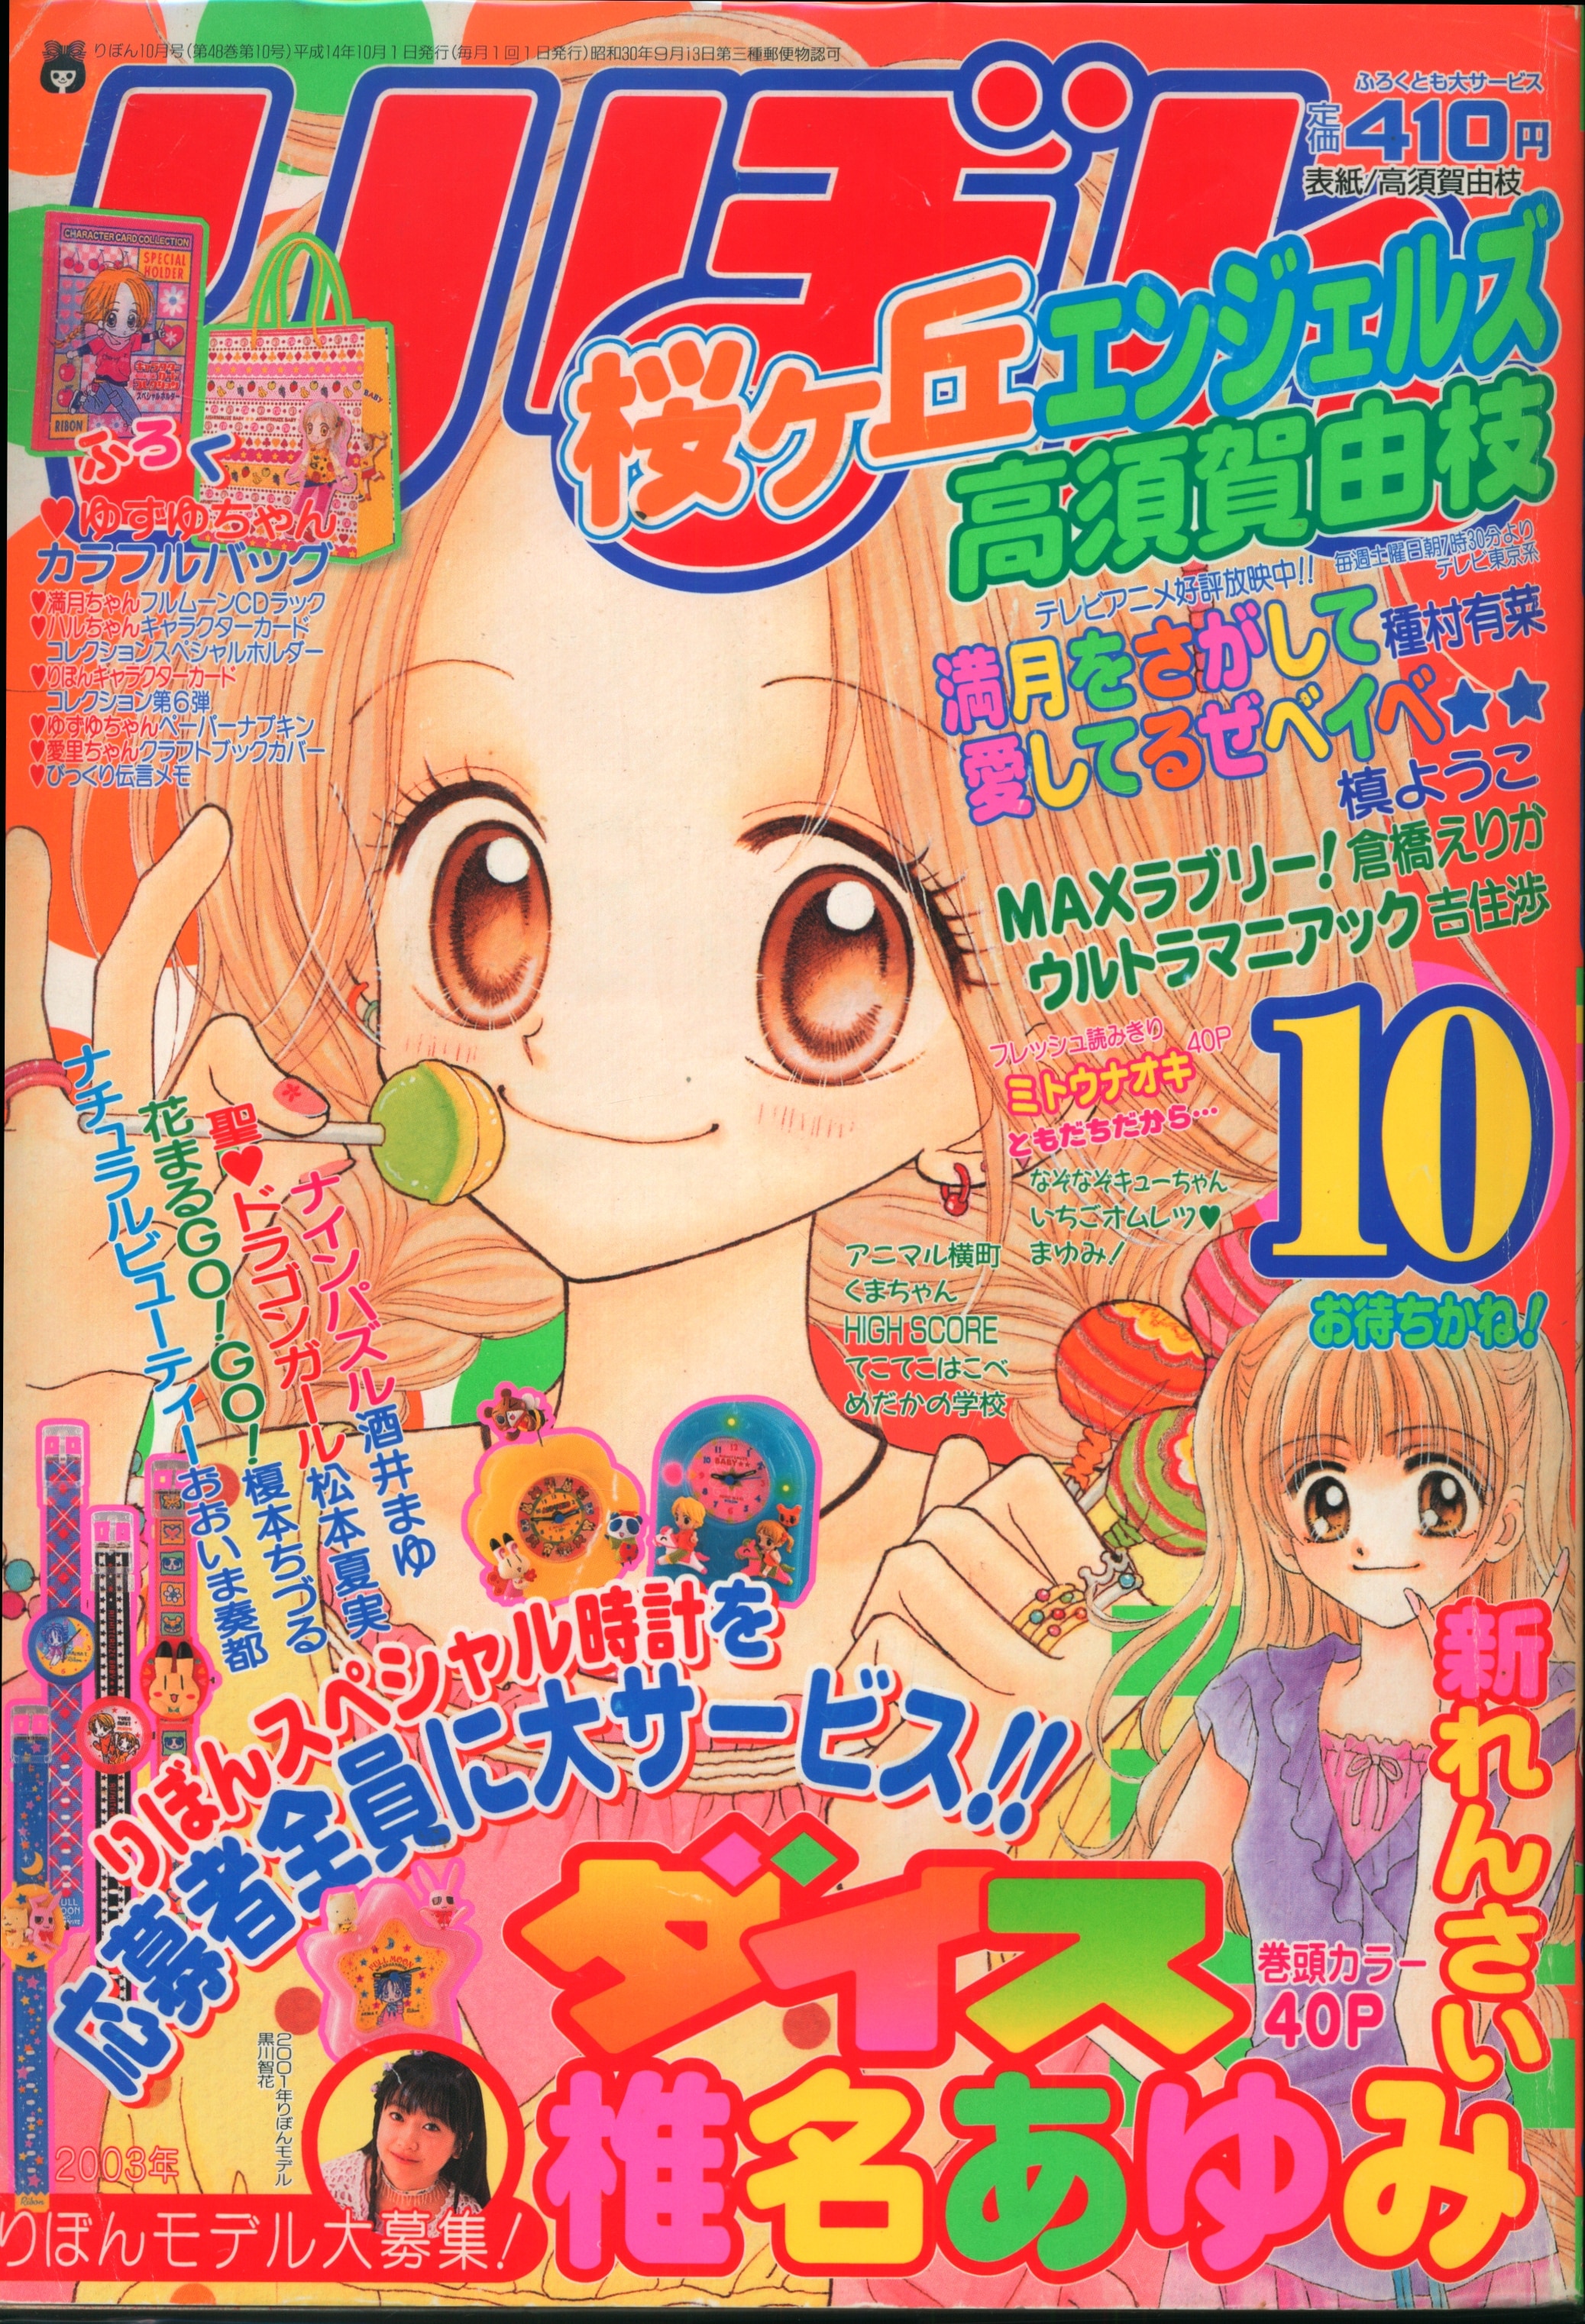 集英社 2002年(平成14年)の漫画雑誌 りぼん 2002年(平成14年)10月号